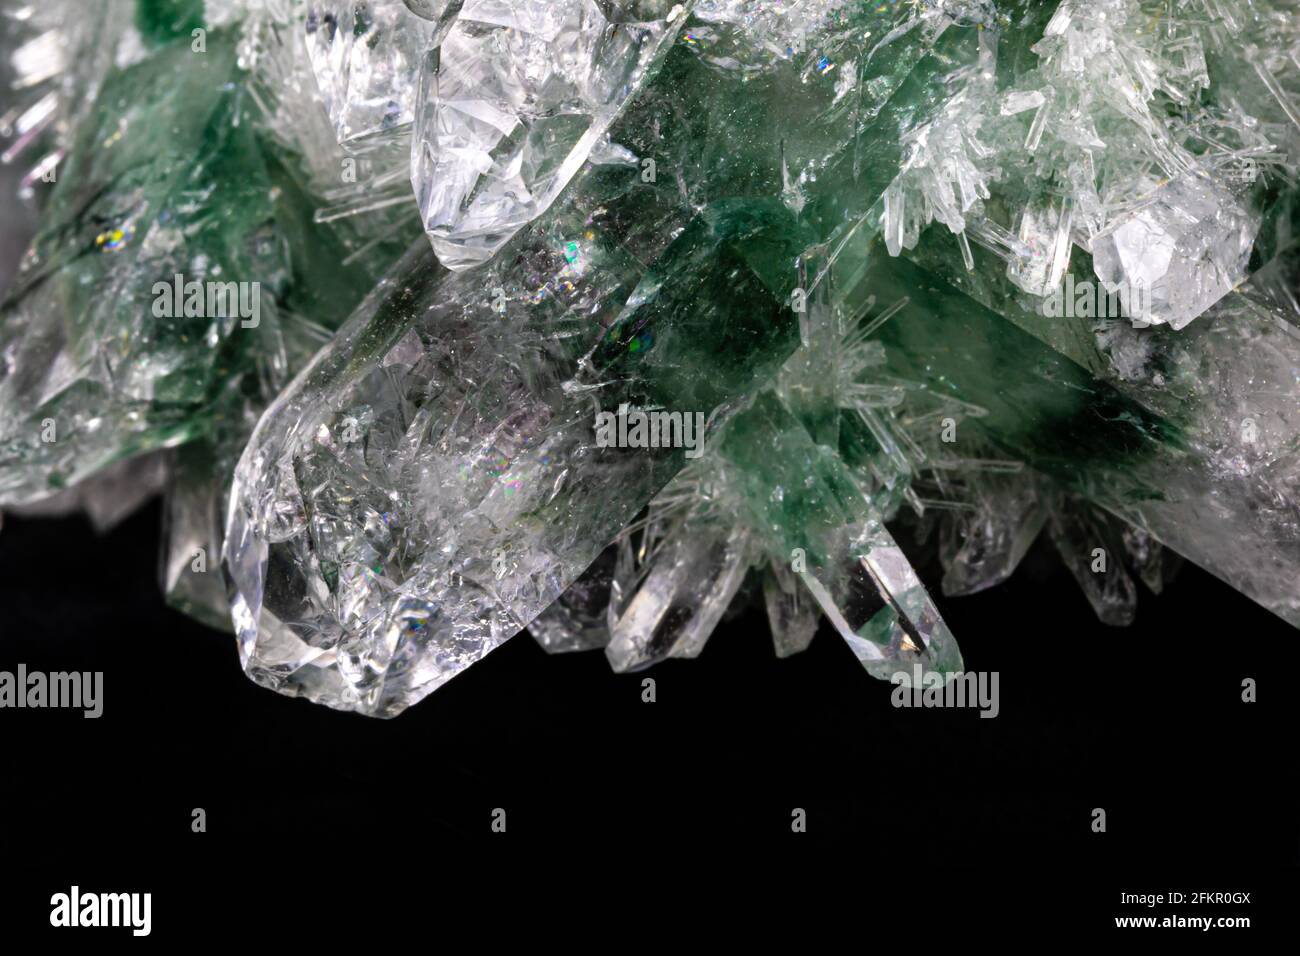 Cristaux de quartz chlorés de l'Himalaya. Les cristaux principaux sont colorés en vert et en blanc; entourés de centaines de minuscules, semblables à des aiguilles. Banque D'Images